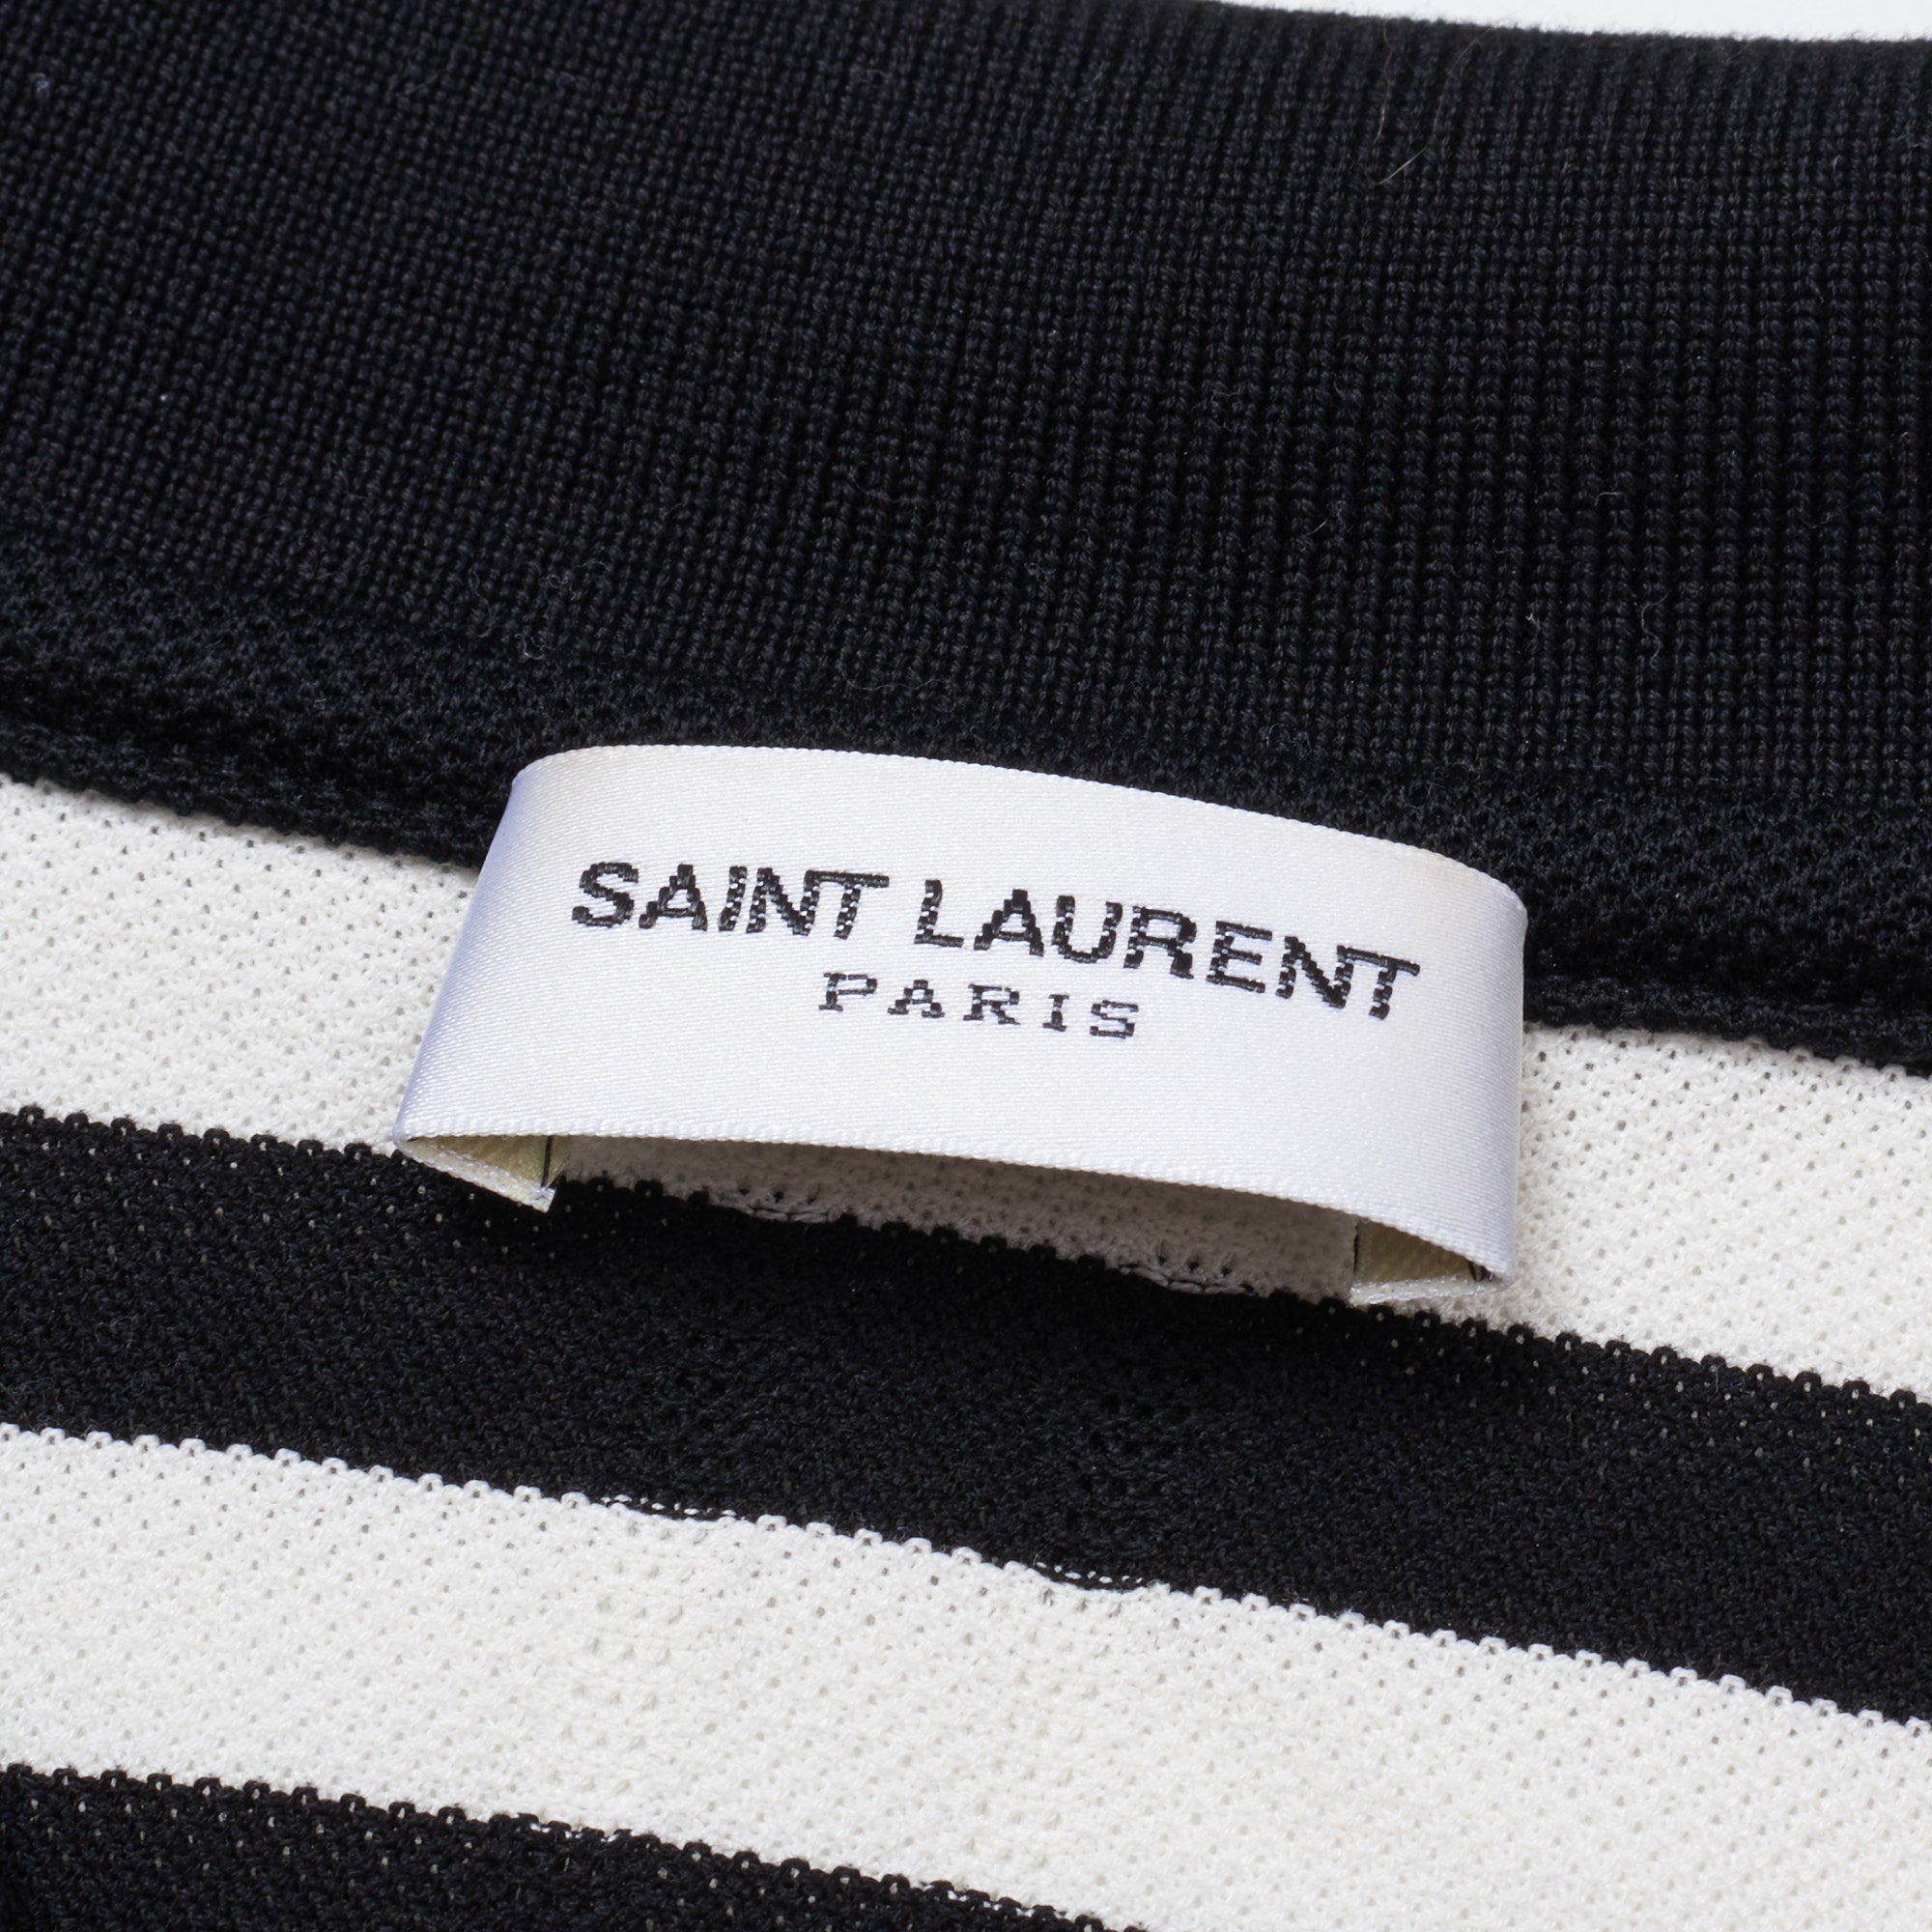 SAINT LAURENT PARIS Black-White Striped Pique Cotton Polo Shirt XL Slim Fit SAINT LAURENT PARIS